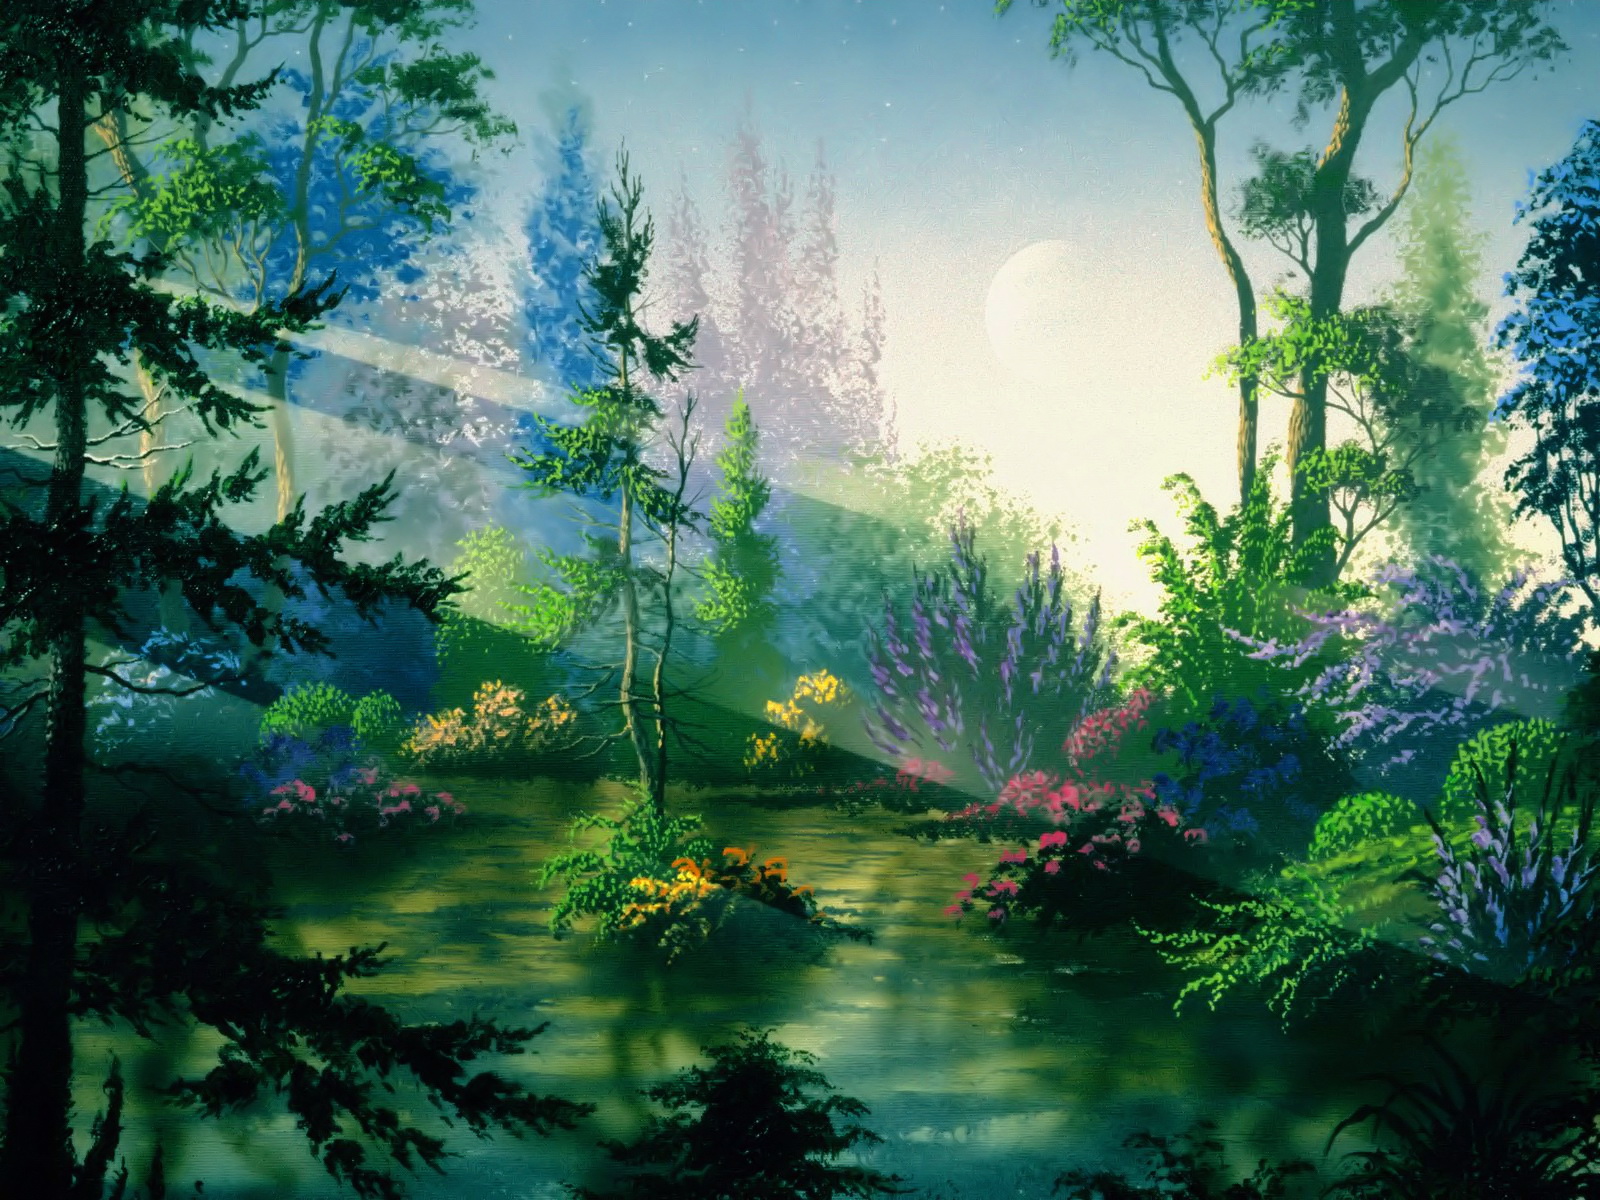 48+] Free Animated Fantasy Desktop Wallpaper - WallpaperSafari